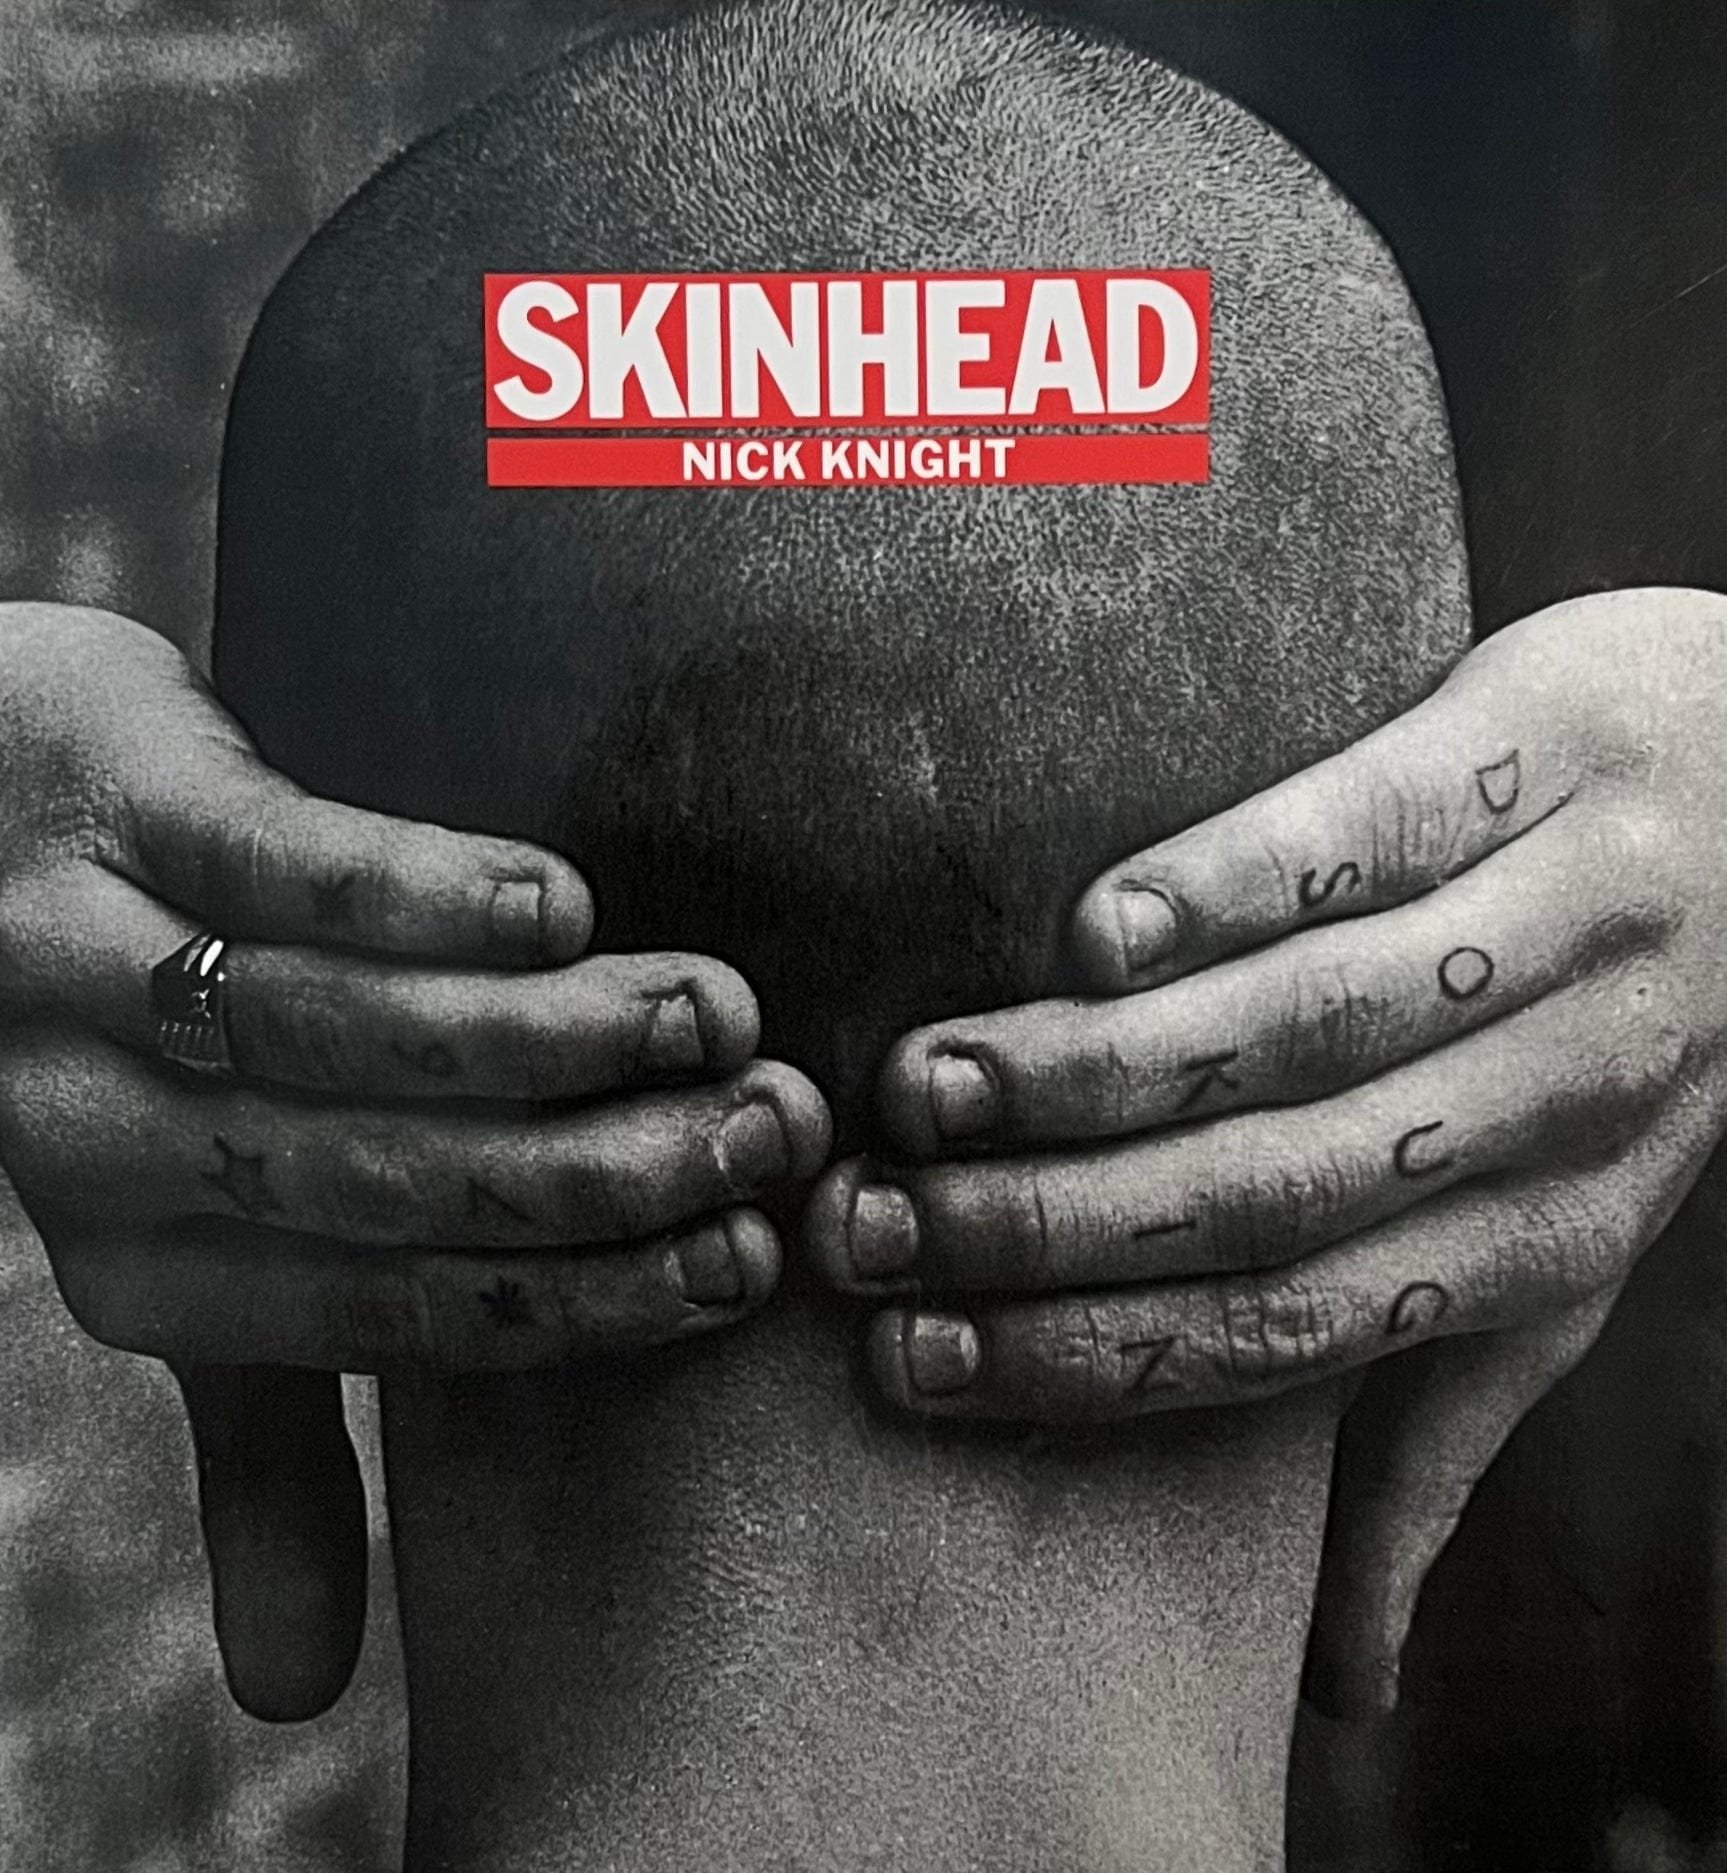 Nick Knight - Skinhead, 1982